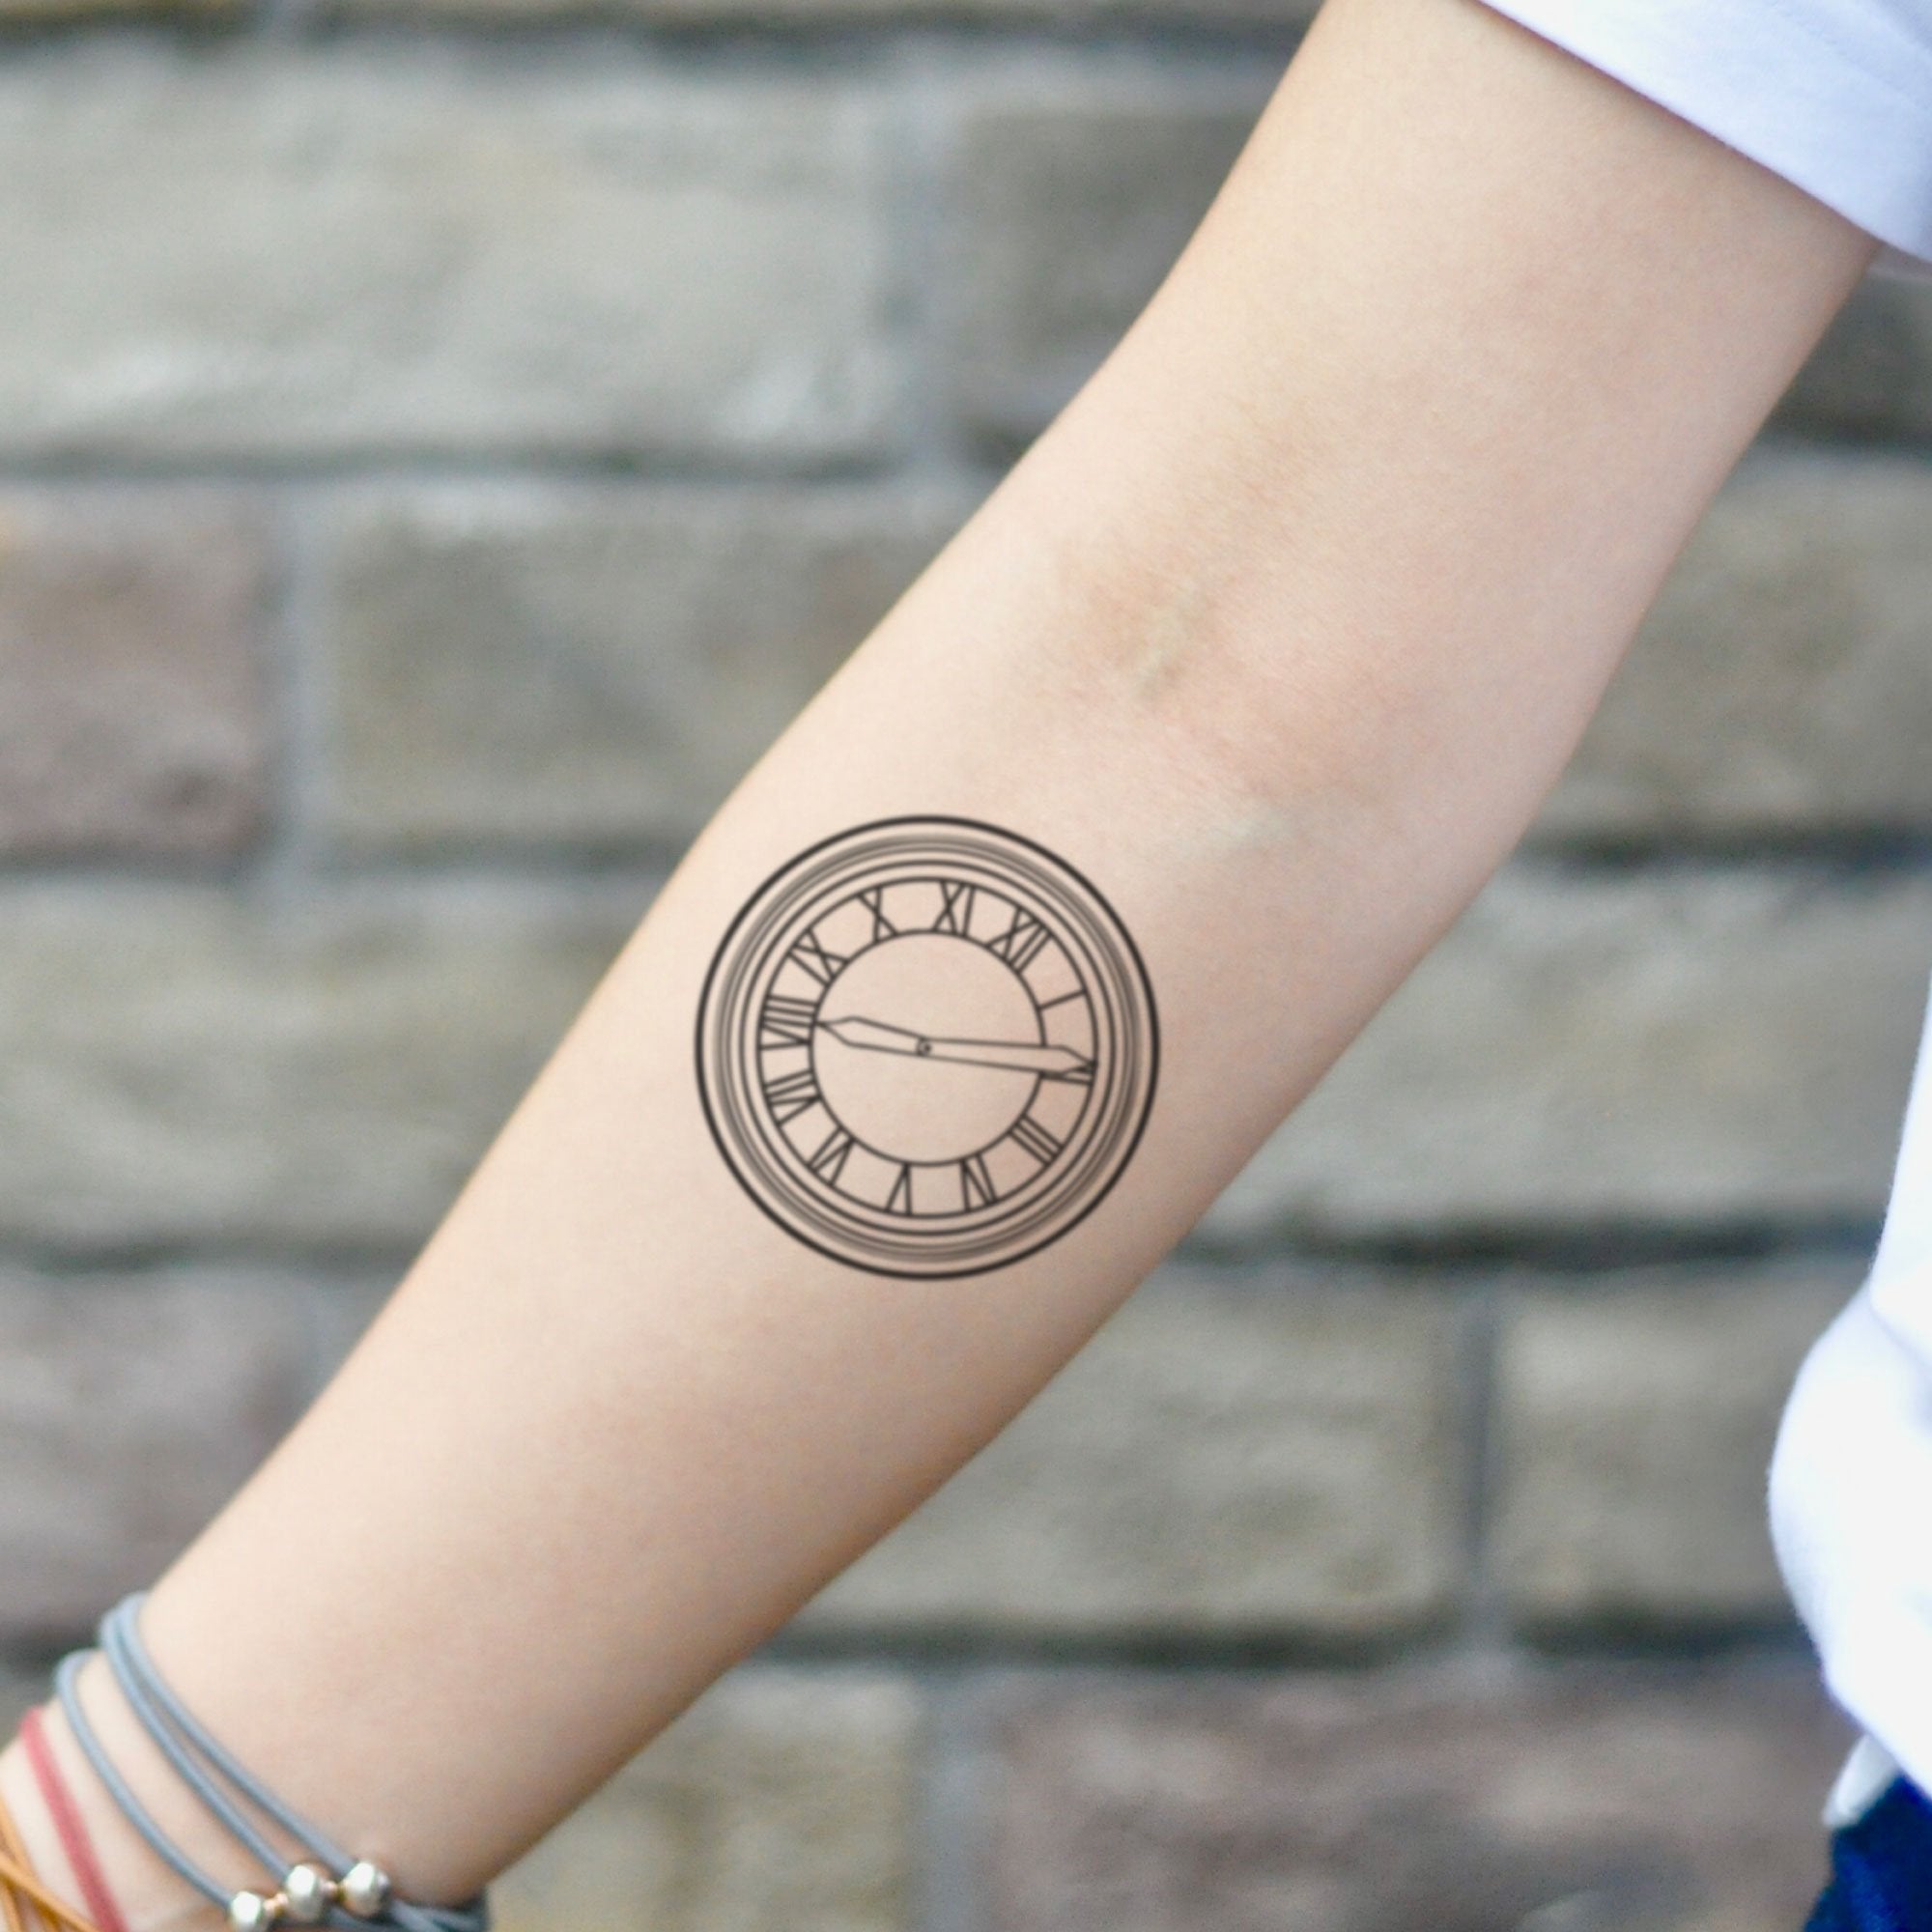 Buy Broken Clock Temporary Tattoo Sticker set of 2 Online in India - Etsy